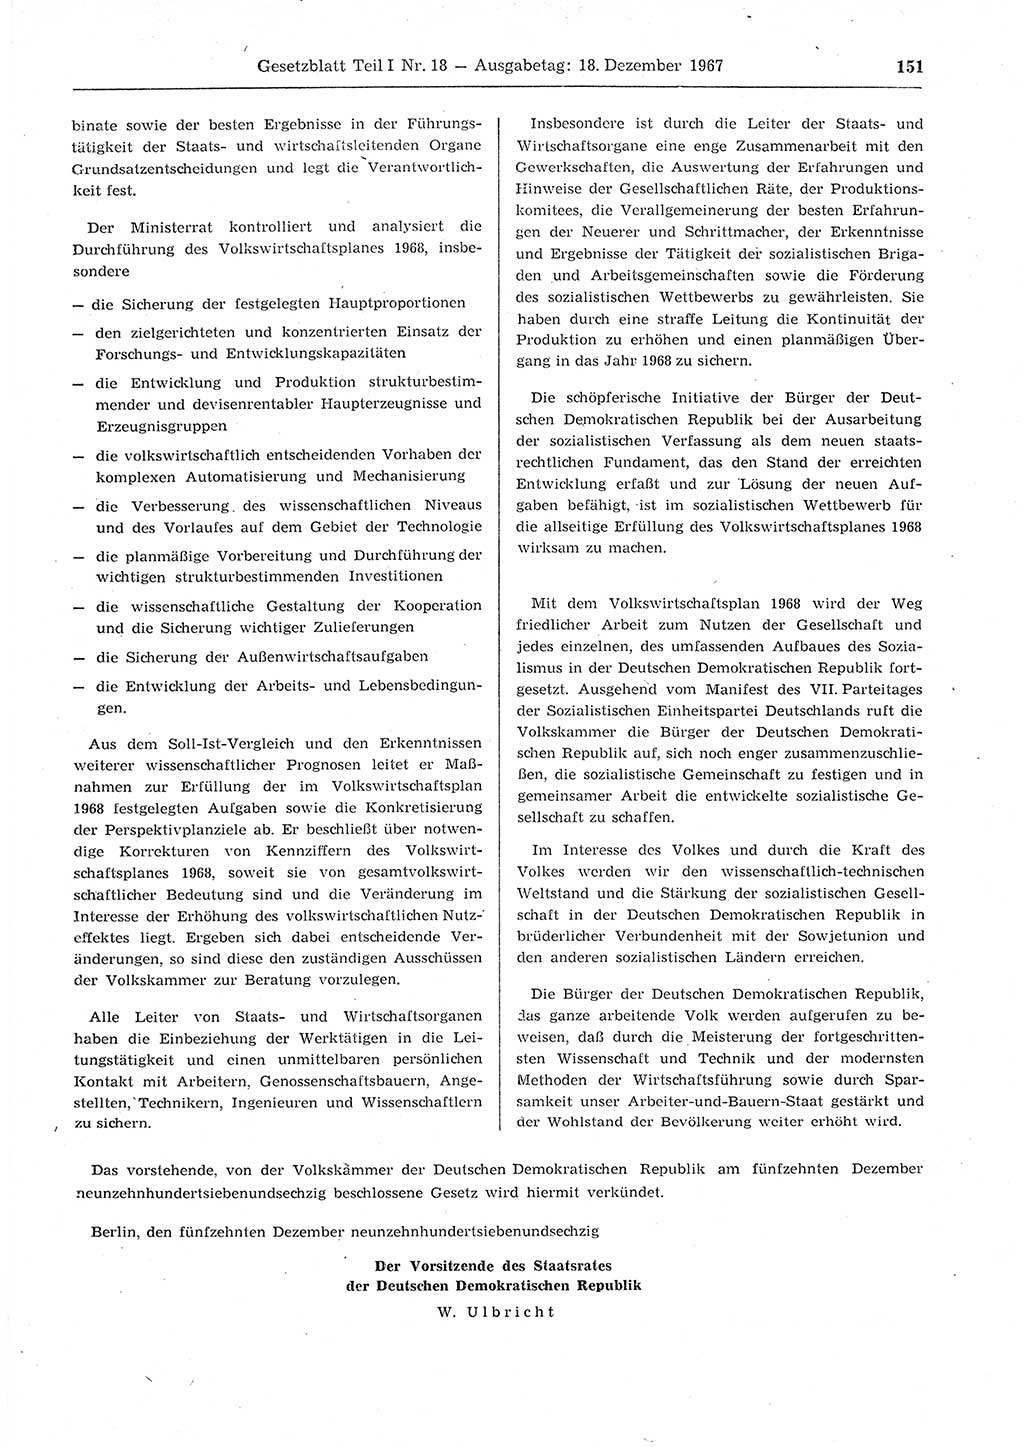 Gesetzblatt (GBl.) der Deutschen Demokratischen Republik (DDR) Teil Ⅰ 1967, Seite 151 (GBl. DDR Ⅰ 1967, S. 151)